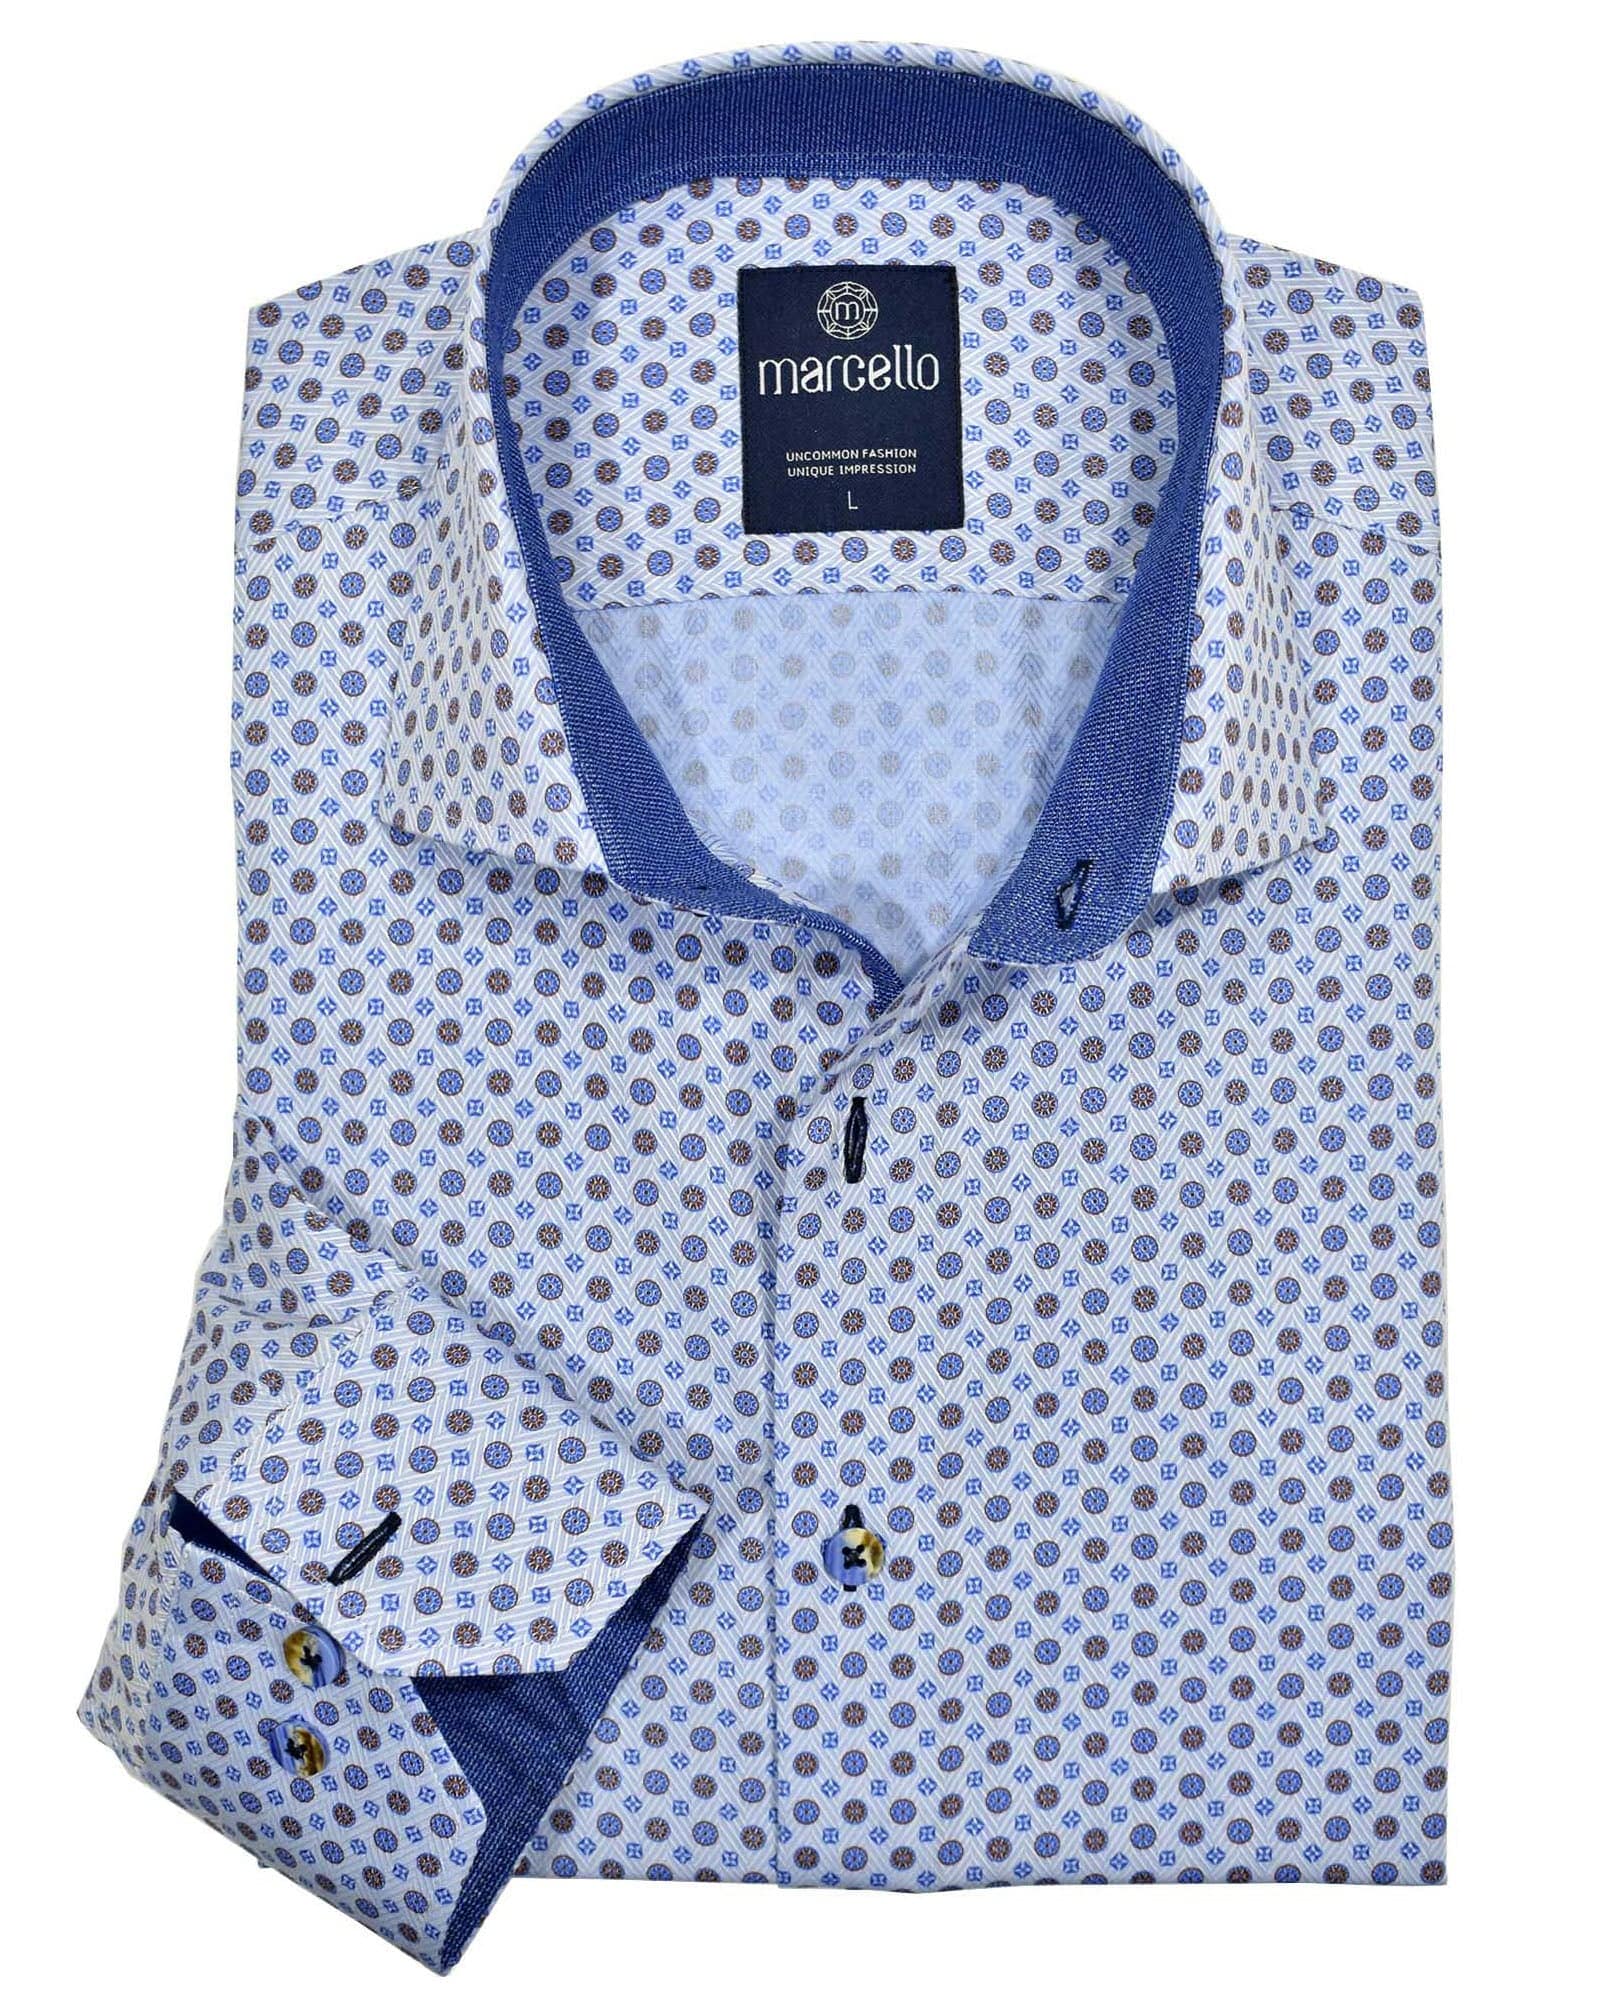 Marcello Light Blue Herringbone Weave In Medallion Print Shirt - Rainwater's Men's Clothing and Tuxedo Rental